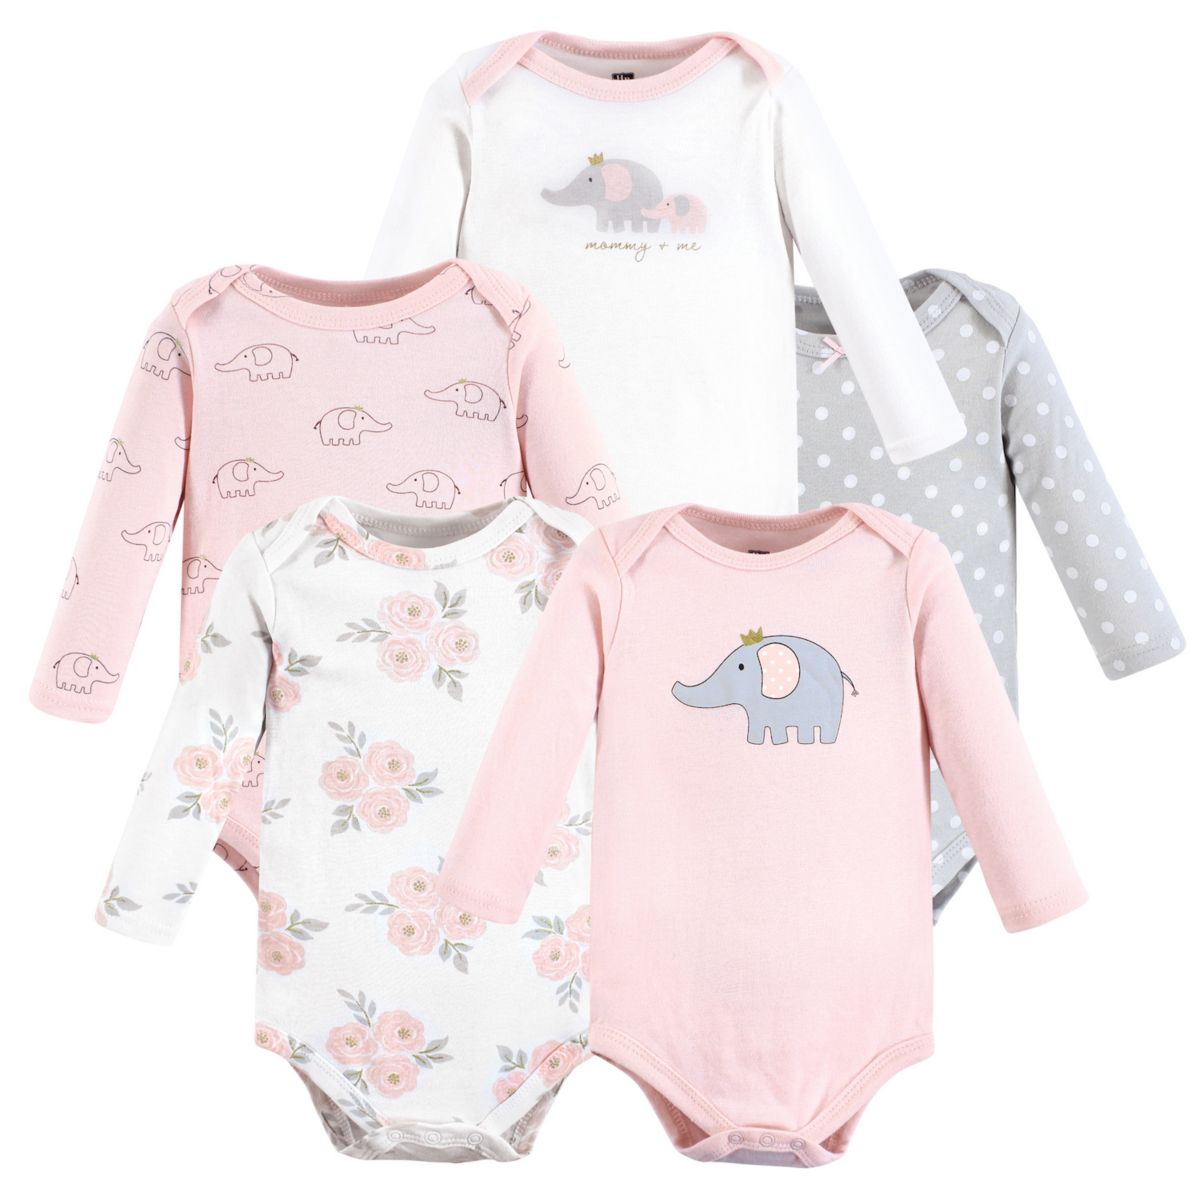 Hudson Baby Infant Girl Хлопковые боди с длинными рукавами, розово-серый слон, 5 шт. в упаковке Hudson Baby